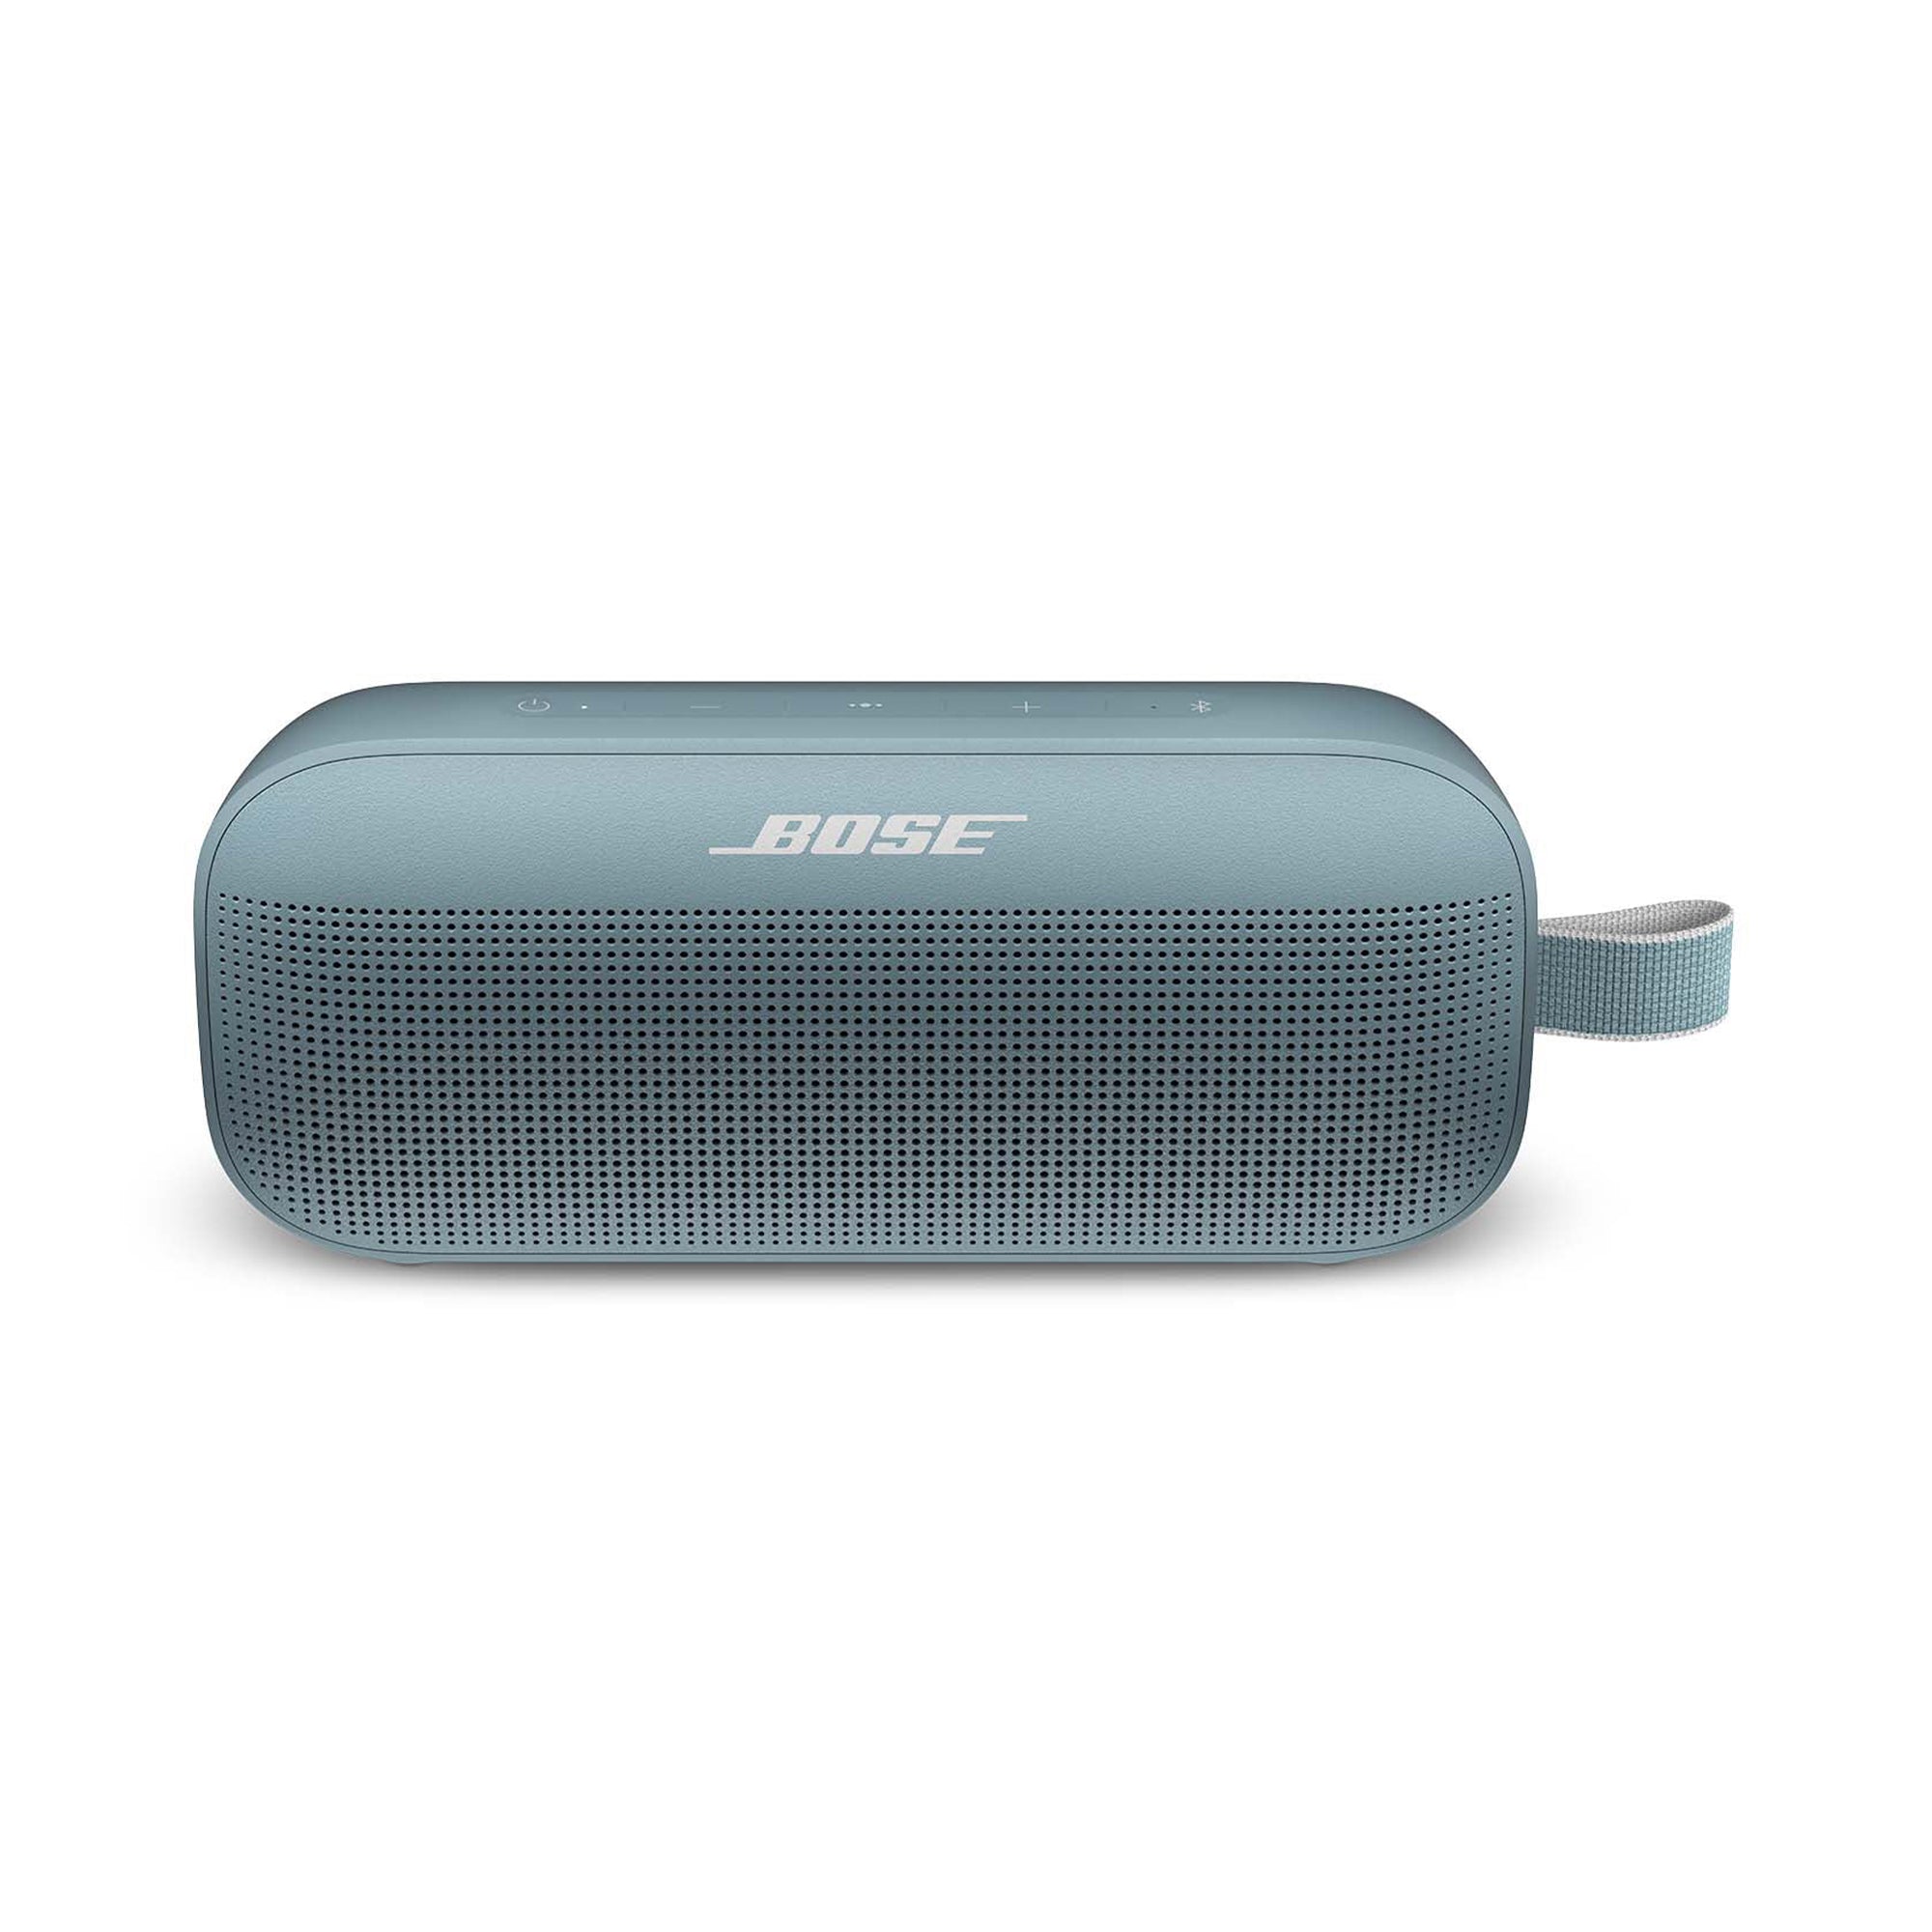 Bose SoundLink Mini Bluetooth Speaker - Black - TESTED